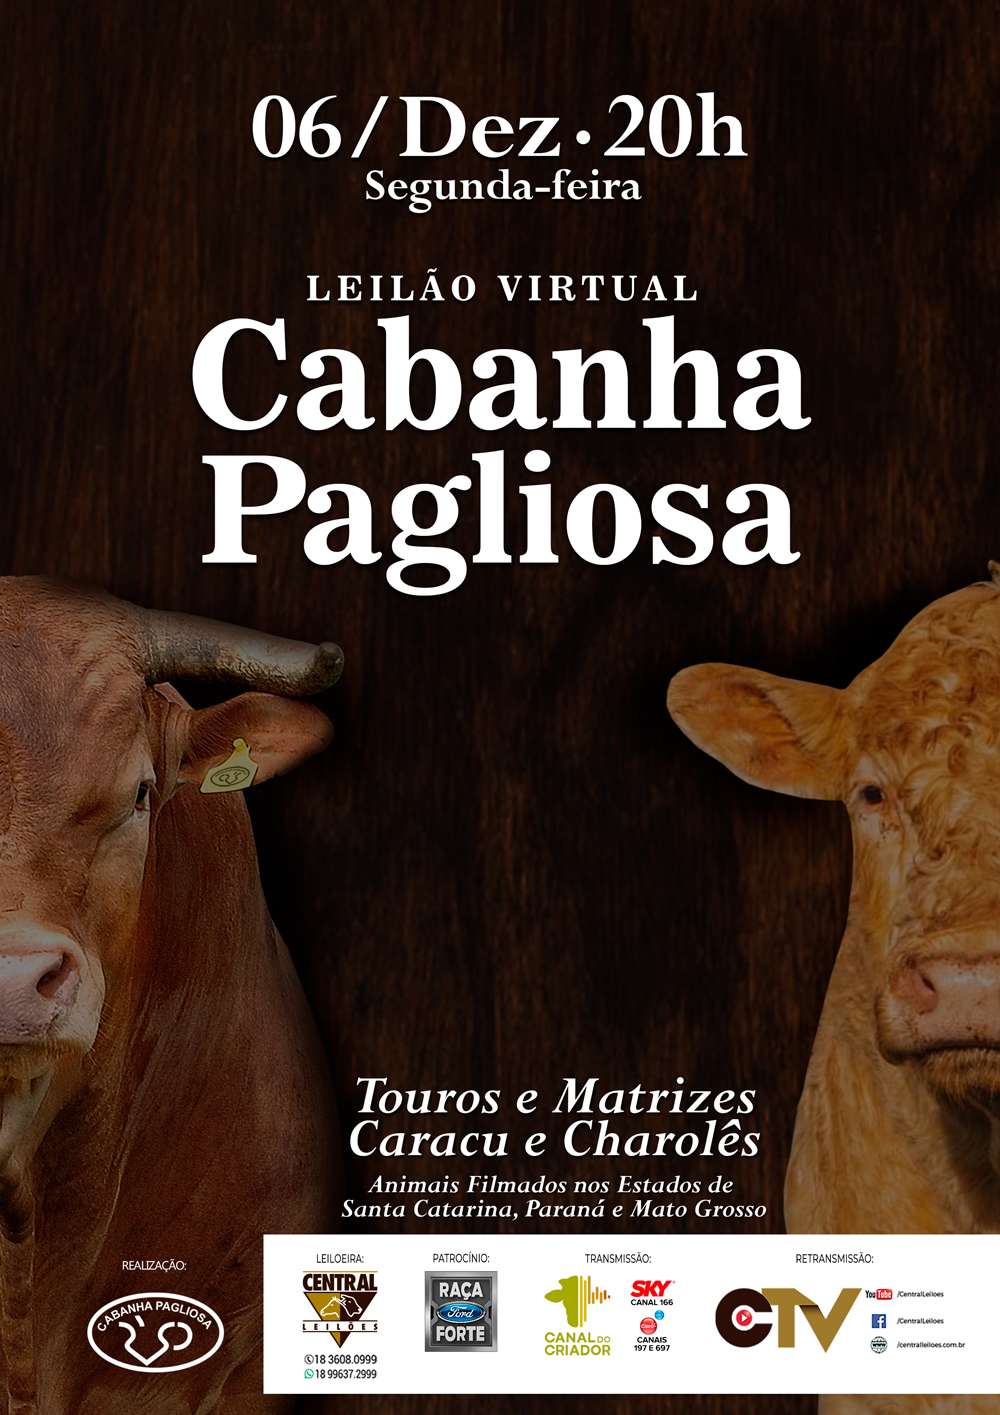 LEILÃO VIRTUAL CABANHA PAGLIOSA